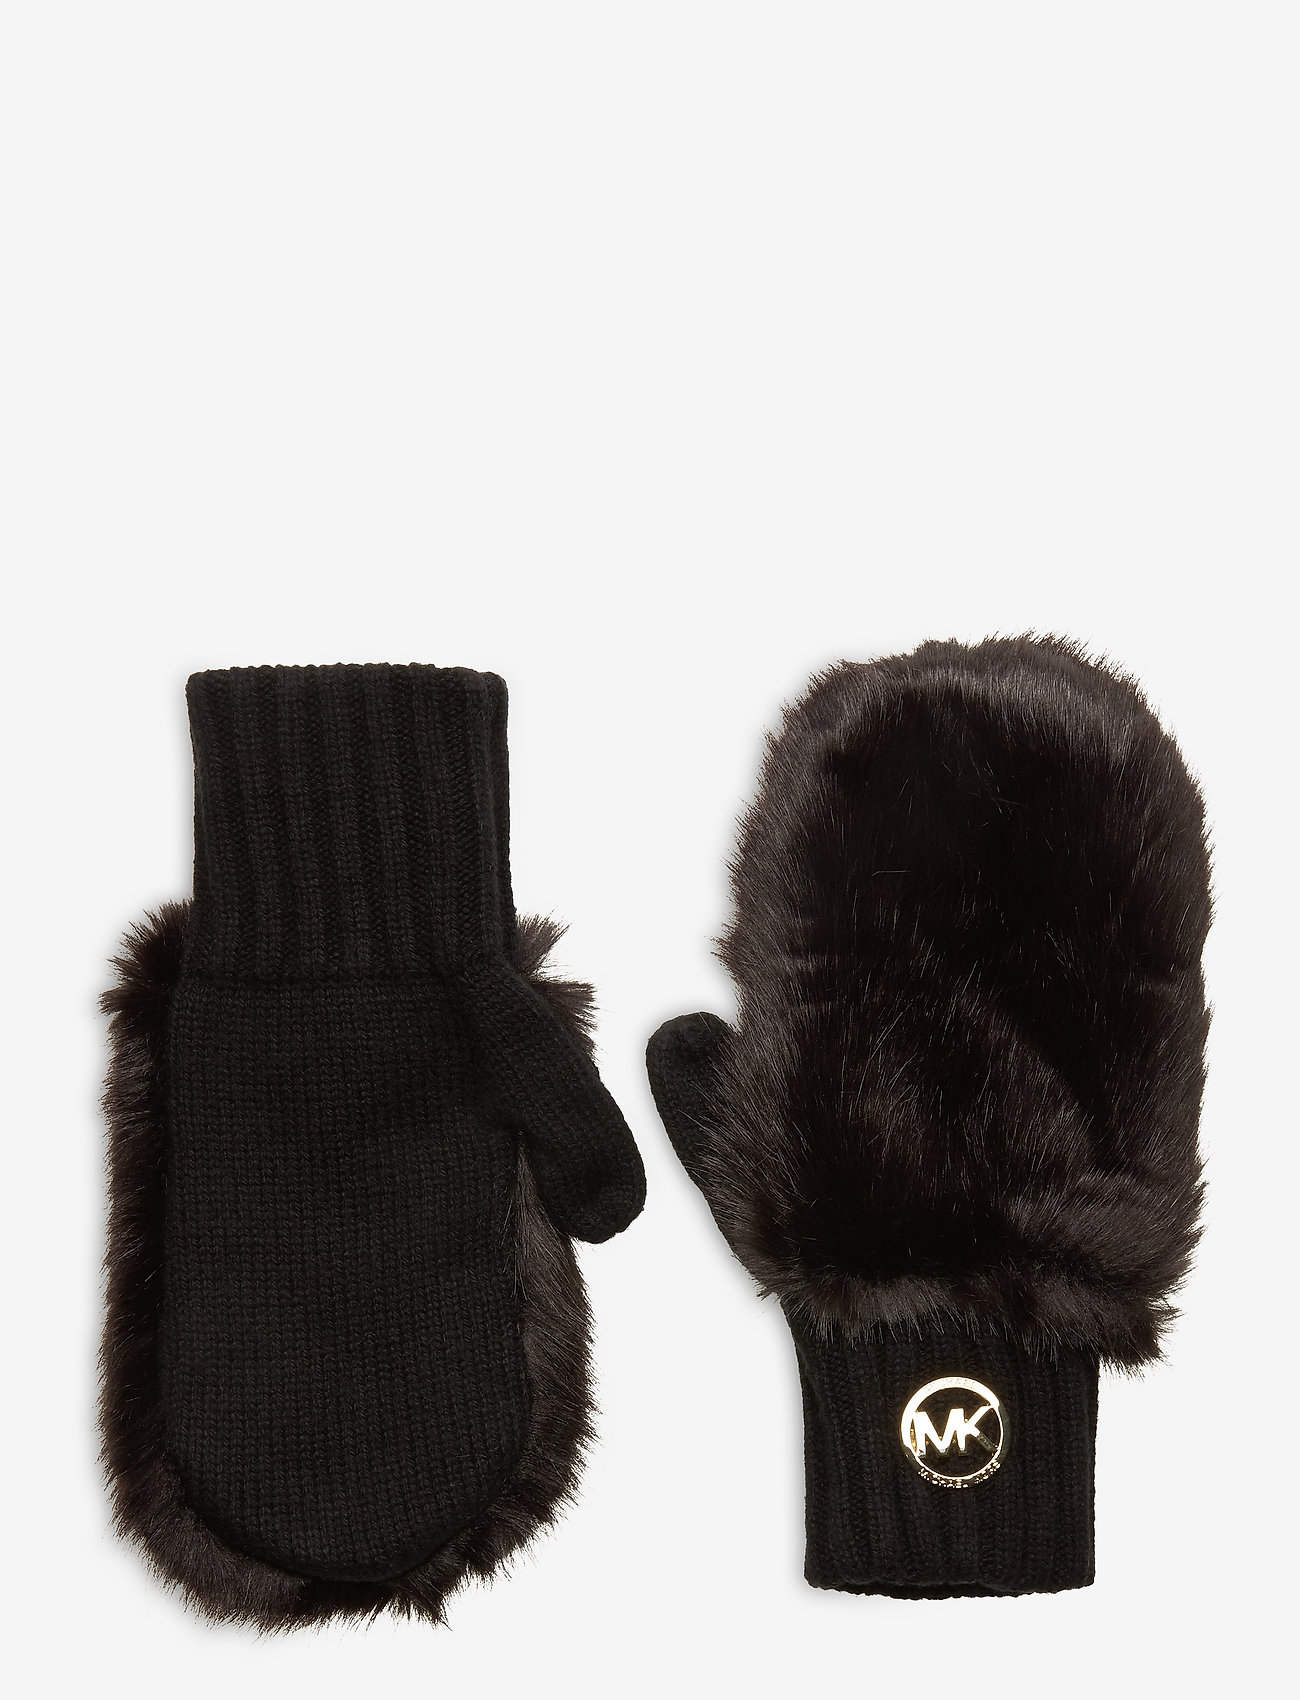 mk gloves